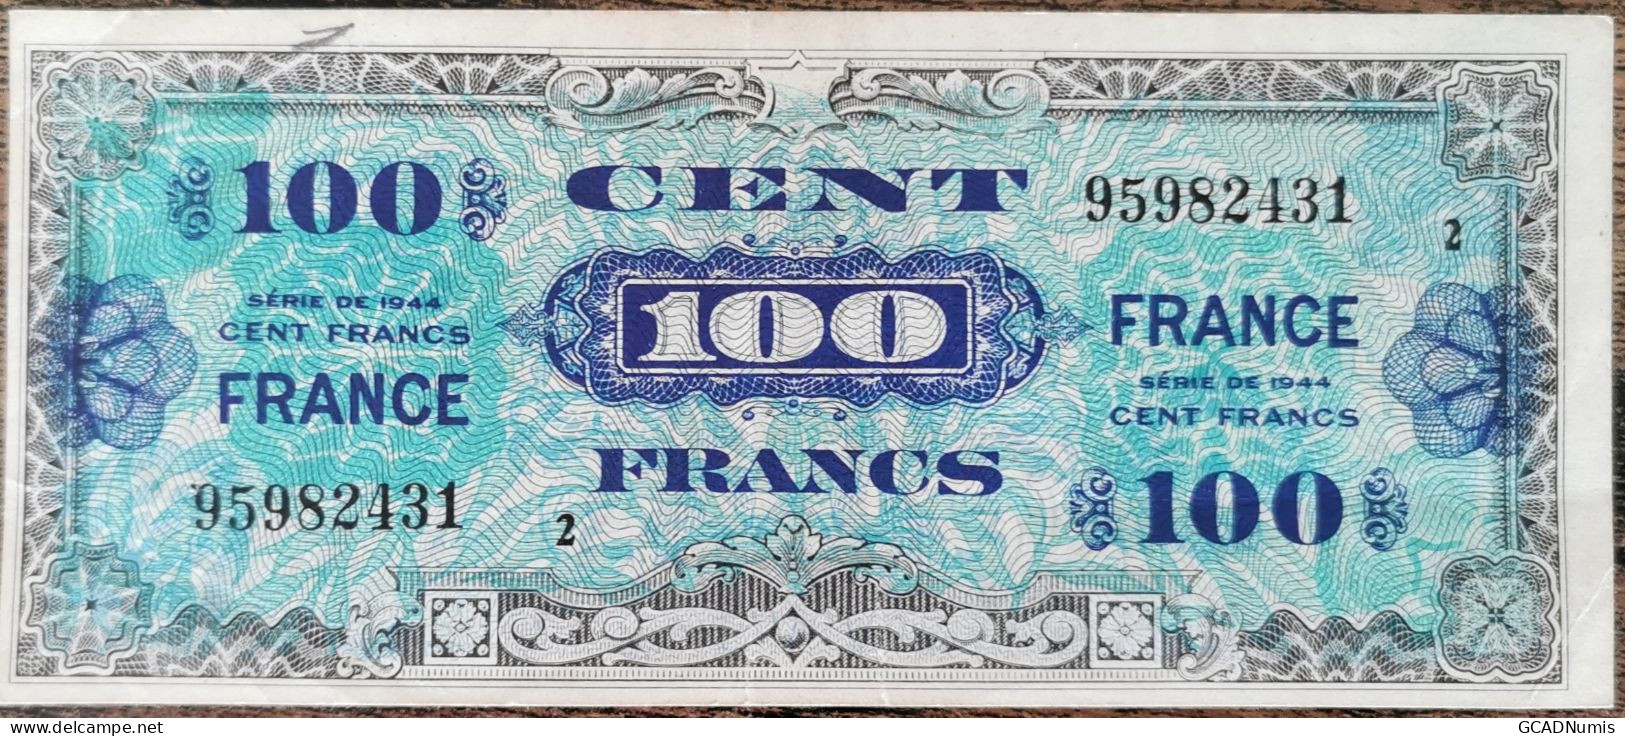 Billet 100 Francs 1944 FRANCE Préparer Par Les USA Pour La Libération Série 2 - 1944 Drapeau/Francia